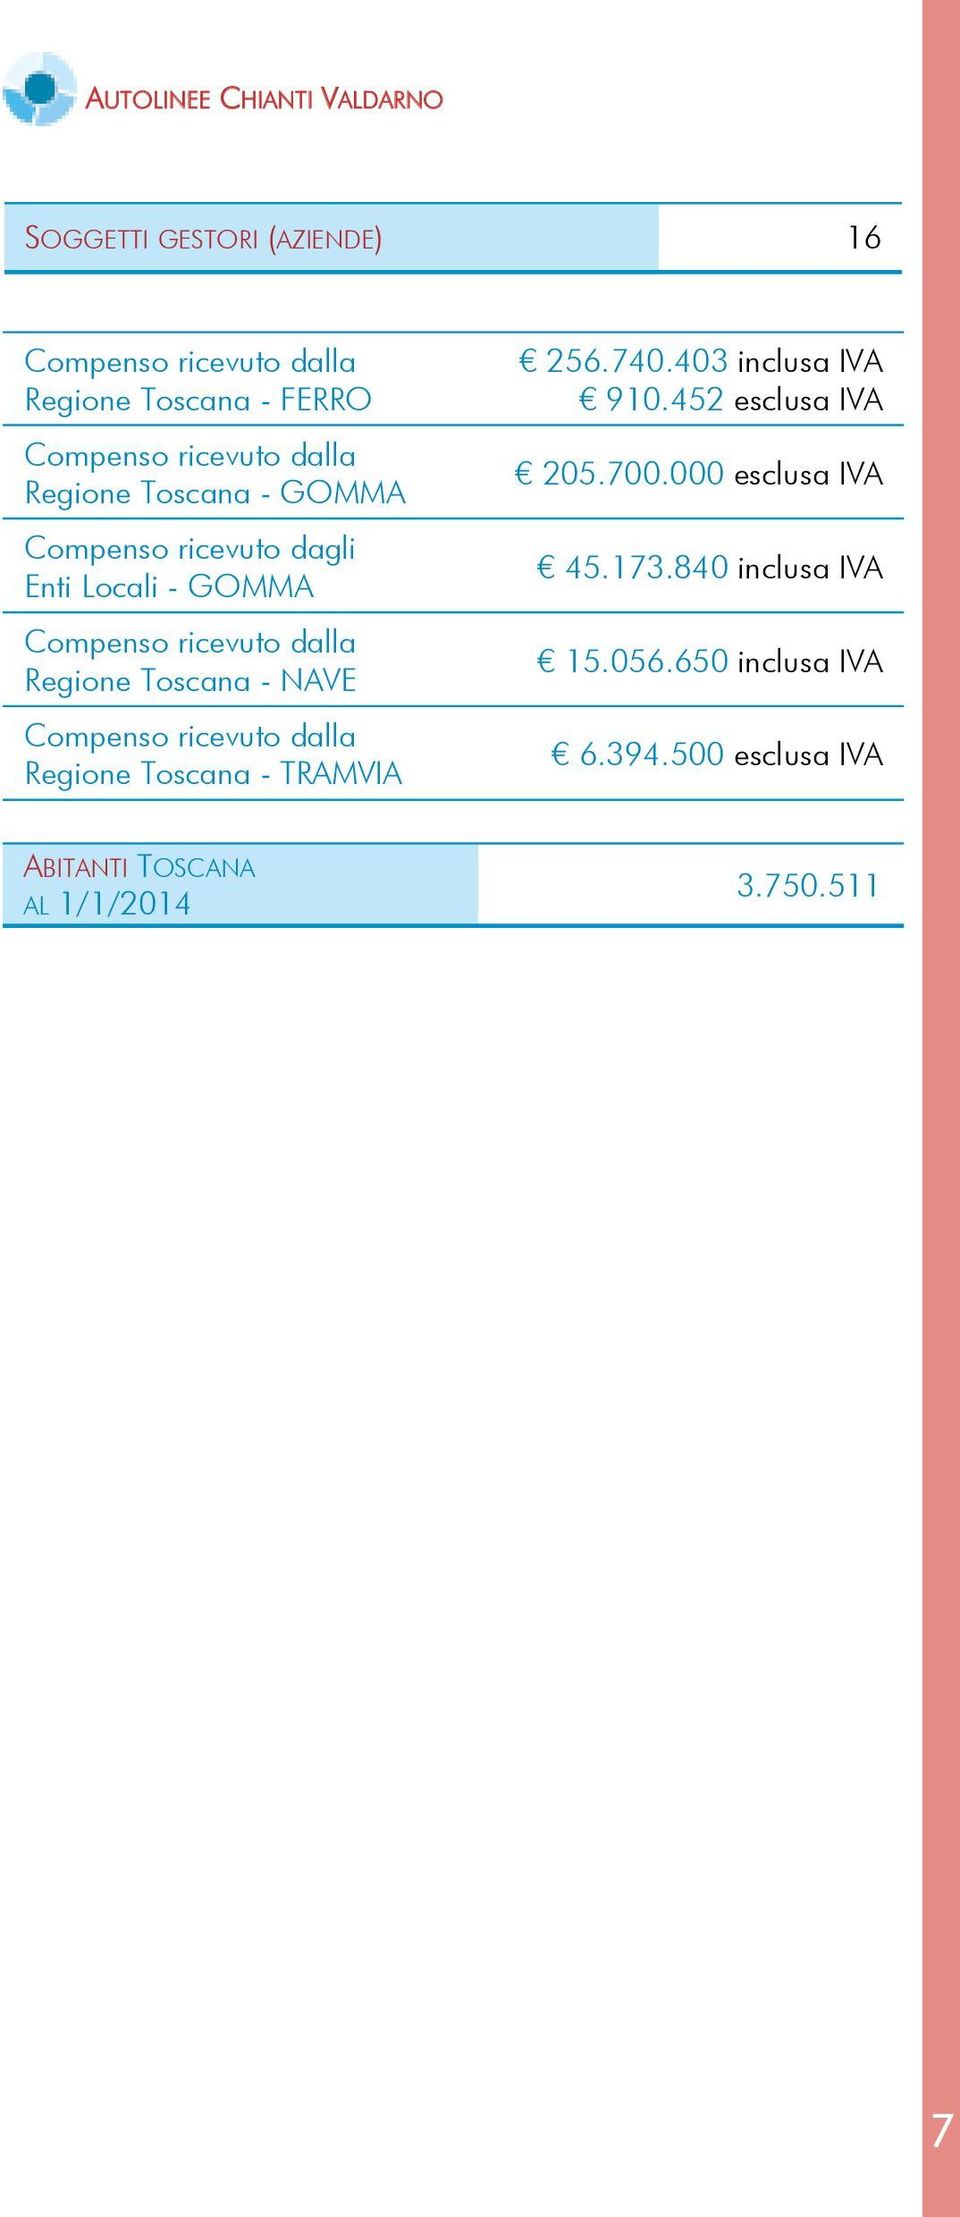 Toscana - NAVE Compenso ricevuto dalla Regione Toscana - TRAMVIA 256.740.403 inclusa IVA 910.452 esclusa IVA 205.700.